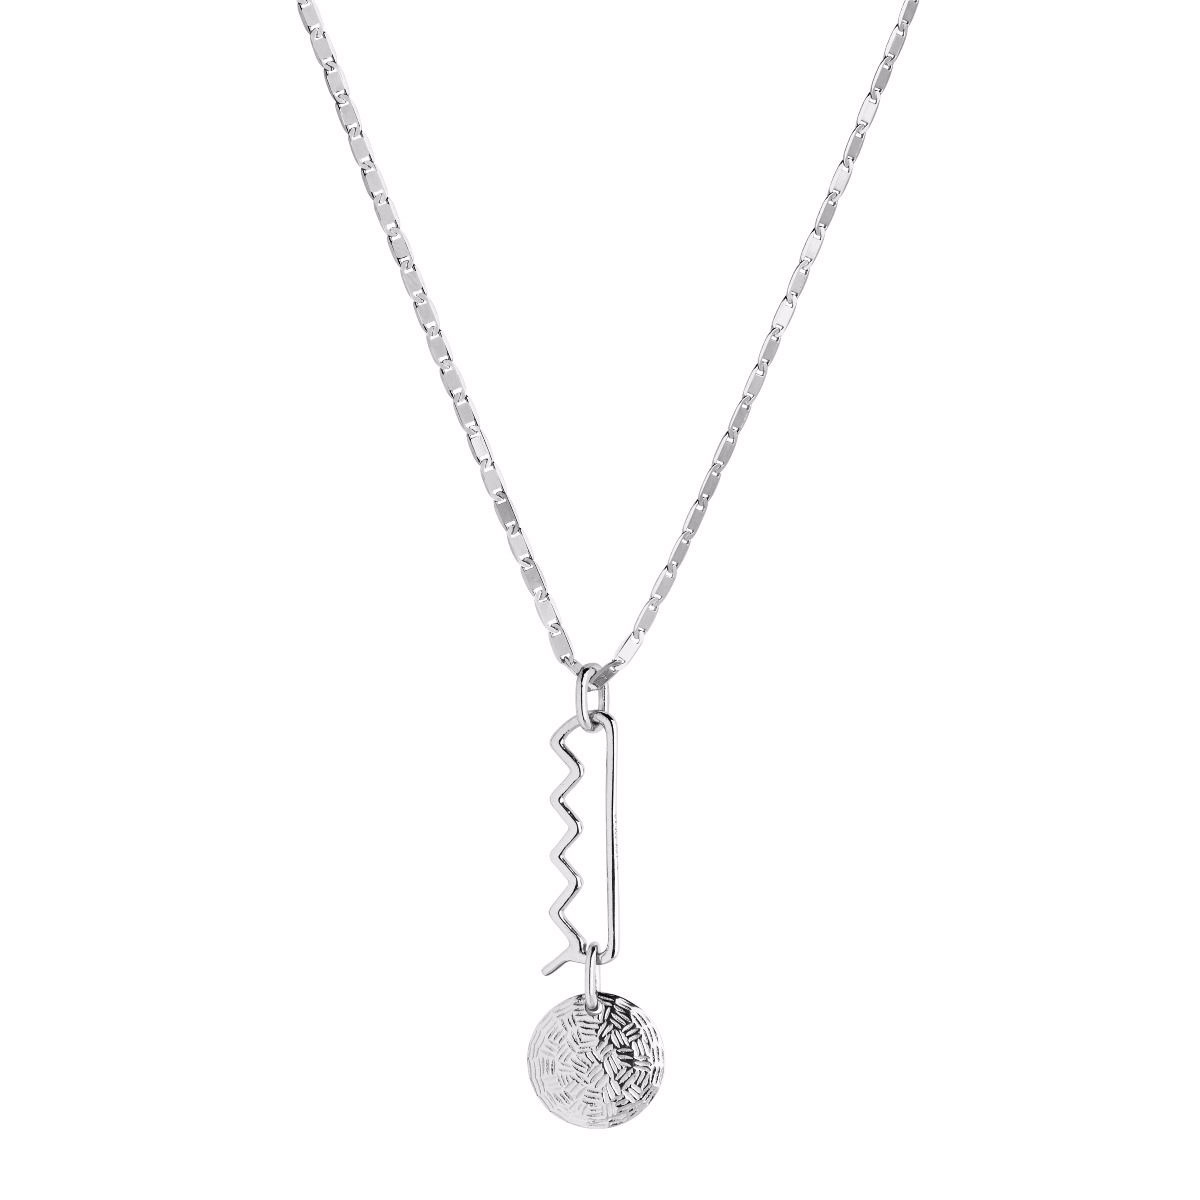 Ювелирные изделия из стерлингового серебра OEM/ODM, ожерелье из белого родия, оптовый поставщик ювелирных изделий на заказ